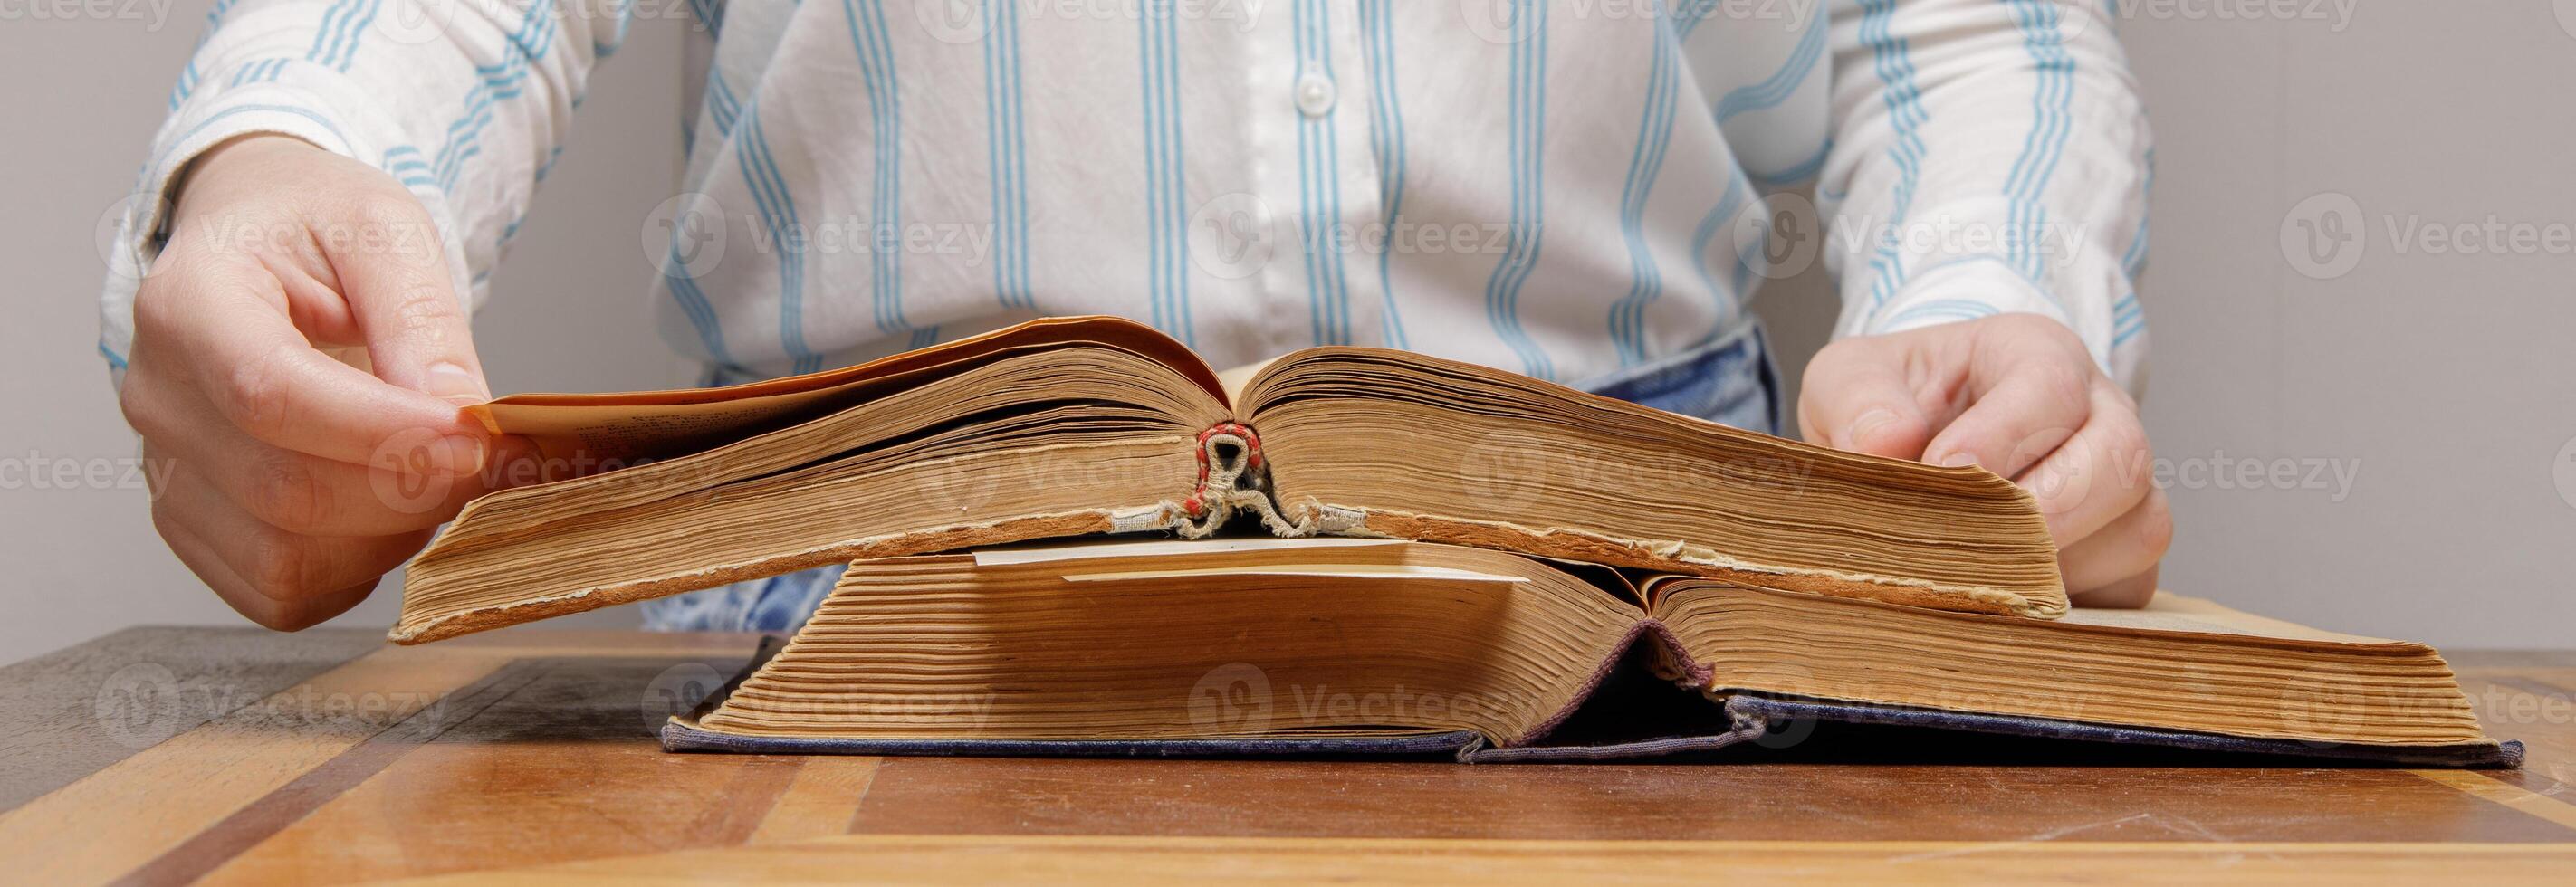 de händer av ett osynlig person blad genom de sidor av ett gammal bok liggande på en trä- tabell i en universitet eller skola bibliotek. foto